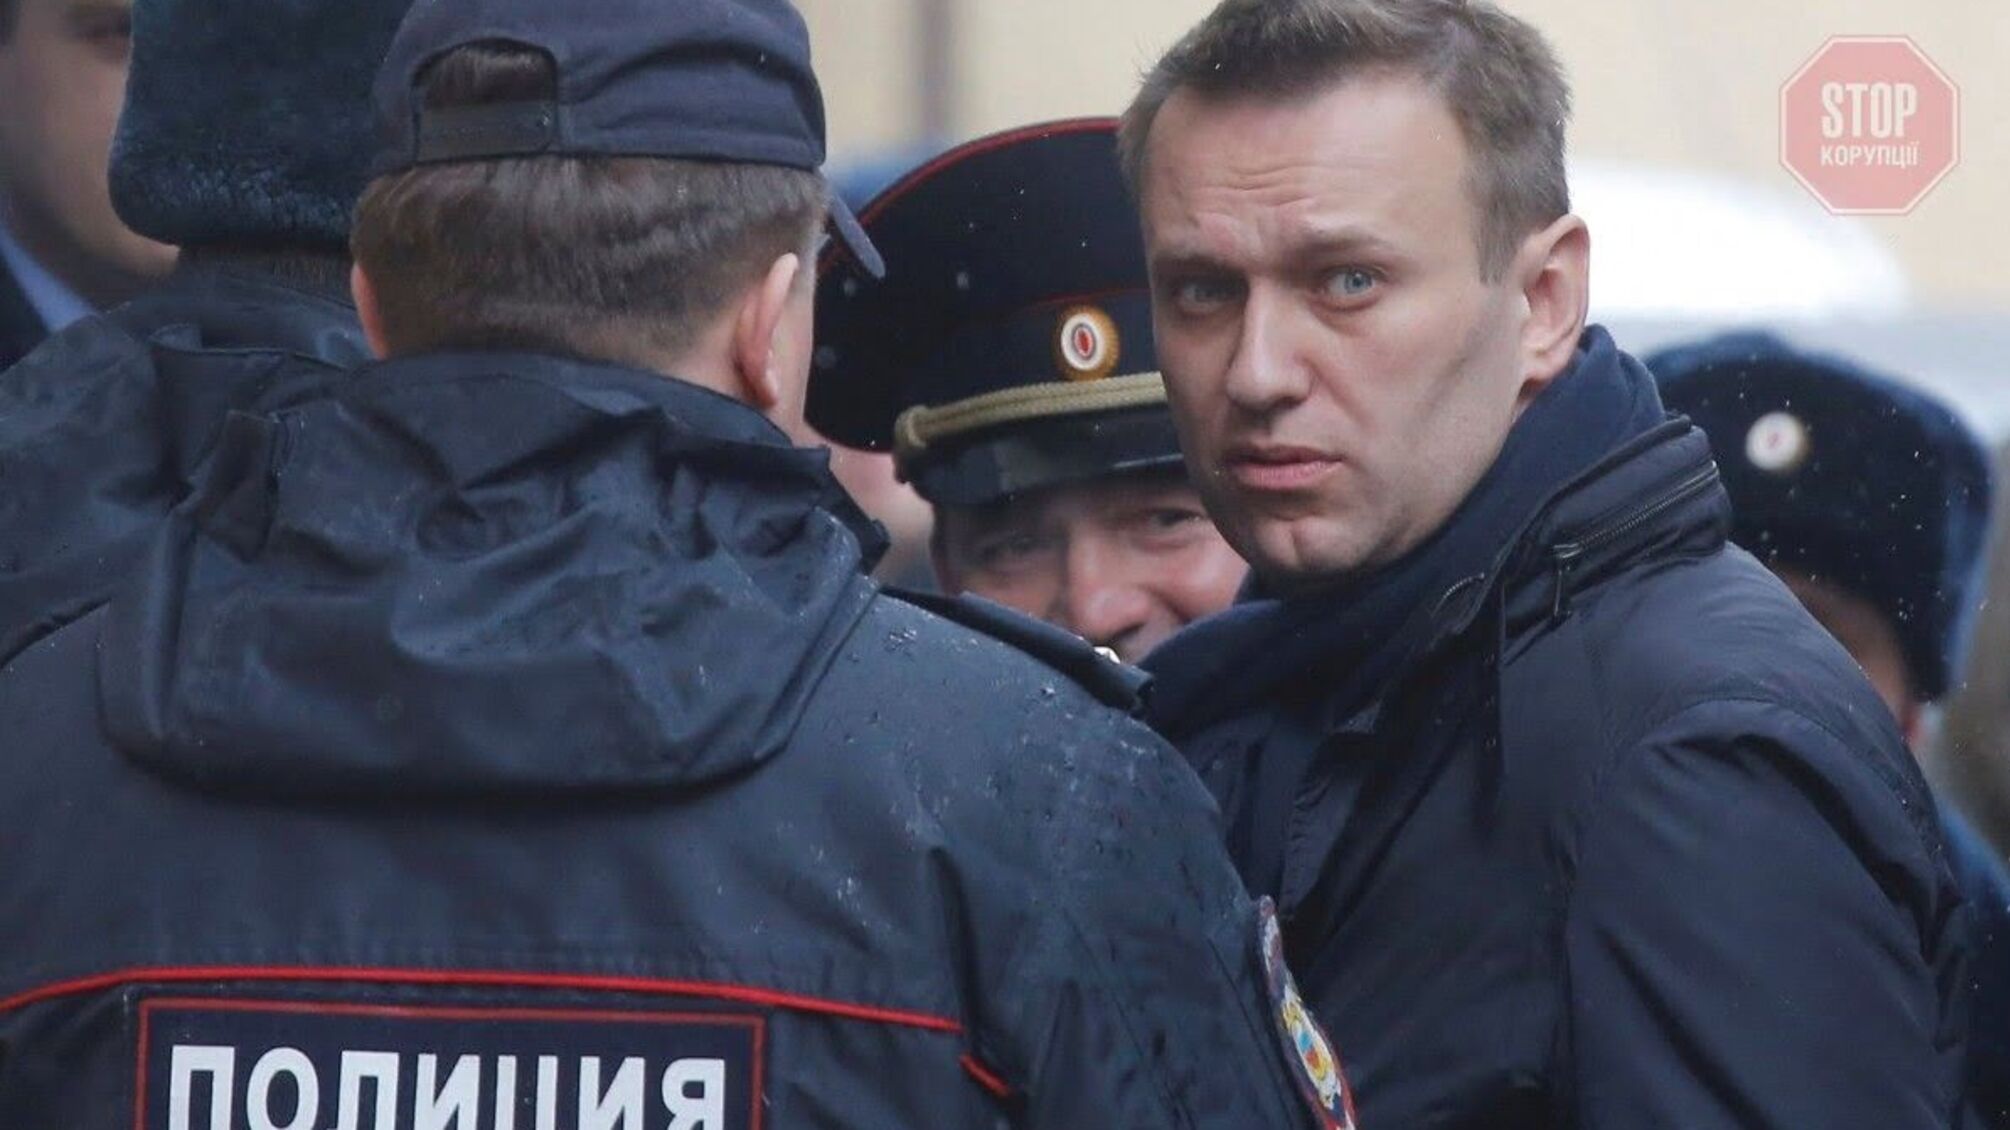 Біля будівлі вже почали затримувати людей: у Москві розпочався суд над опозиціонером Навальним (відео)